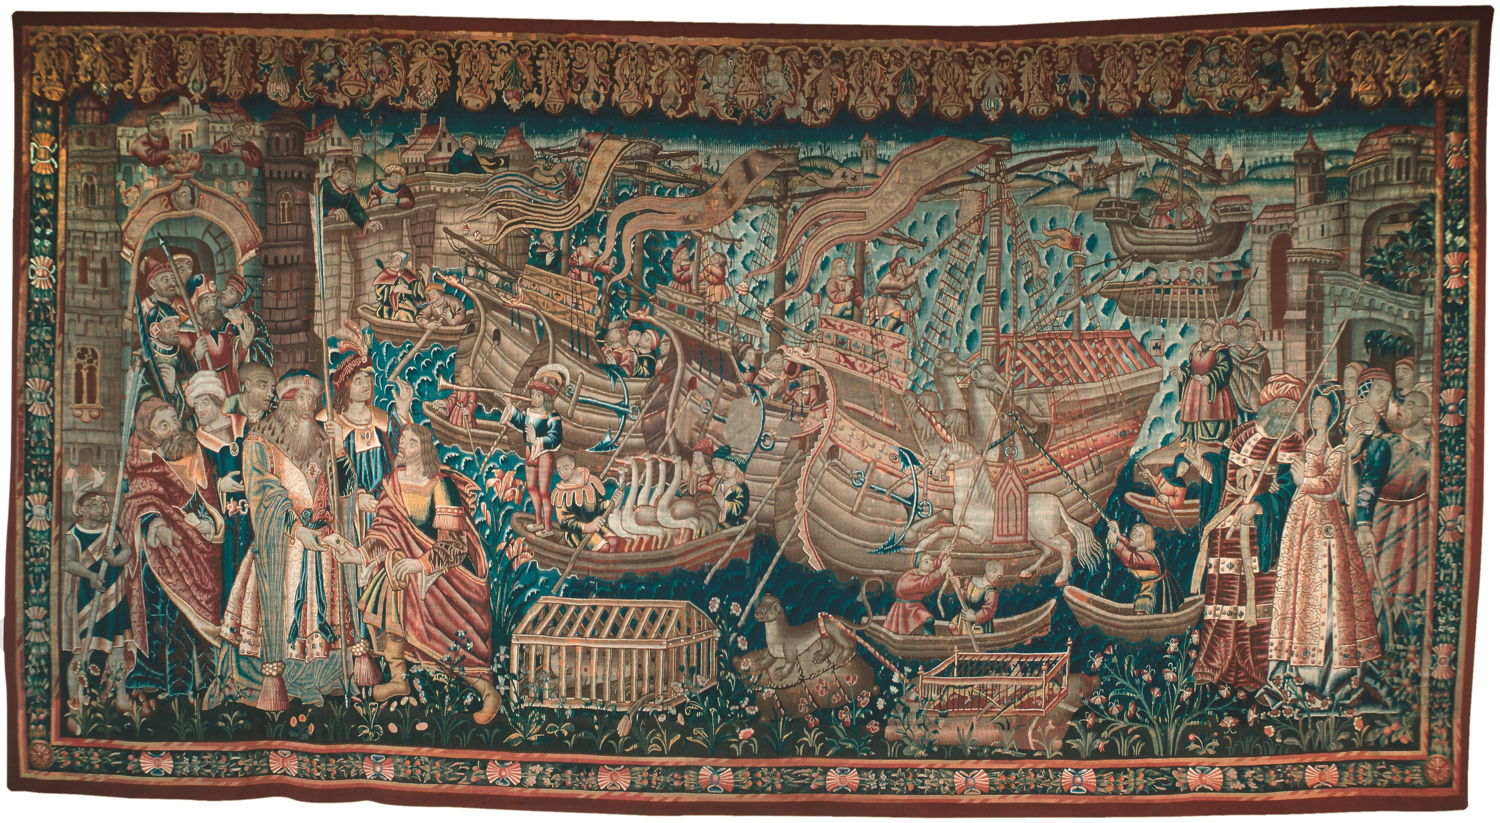 © Le ‘Débarquement de Vasco de Gama en Inde’, Tournai, début du 16e siècle.  
Lisbonne, Caixa General de Dépositos (prêt au Museu Nacional de Arte Antiga, Lisbonne).